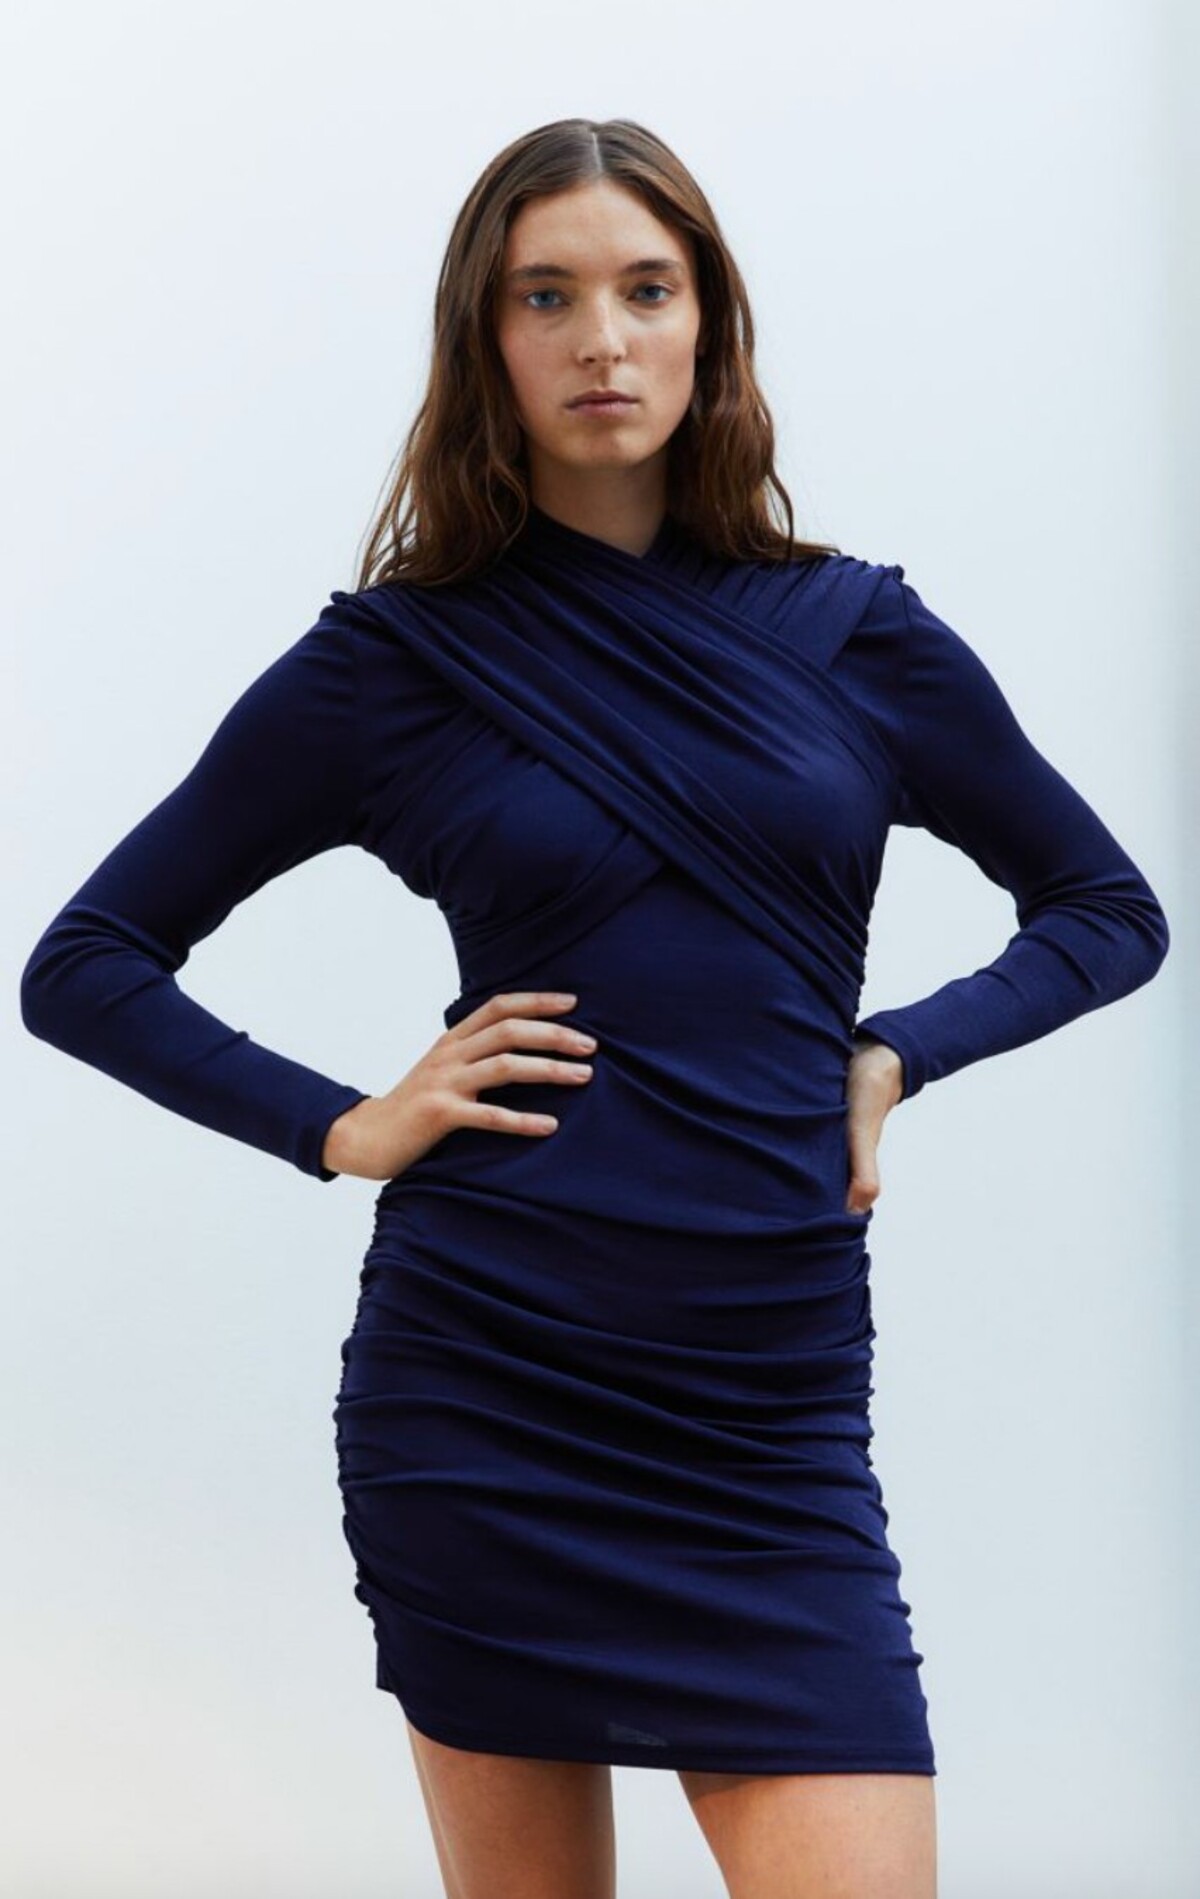 Nariasené džersejové šaty v tmavomodrej ti za lákavých 39,99 eur ponúka H&M.